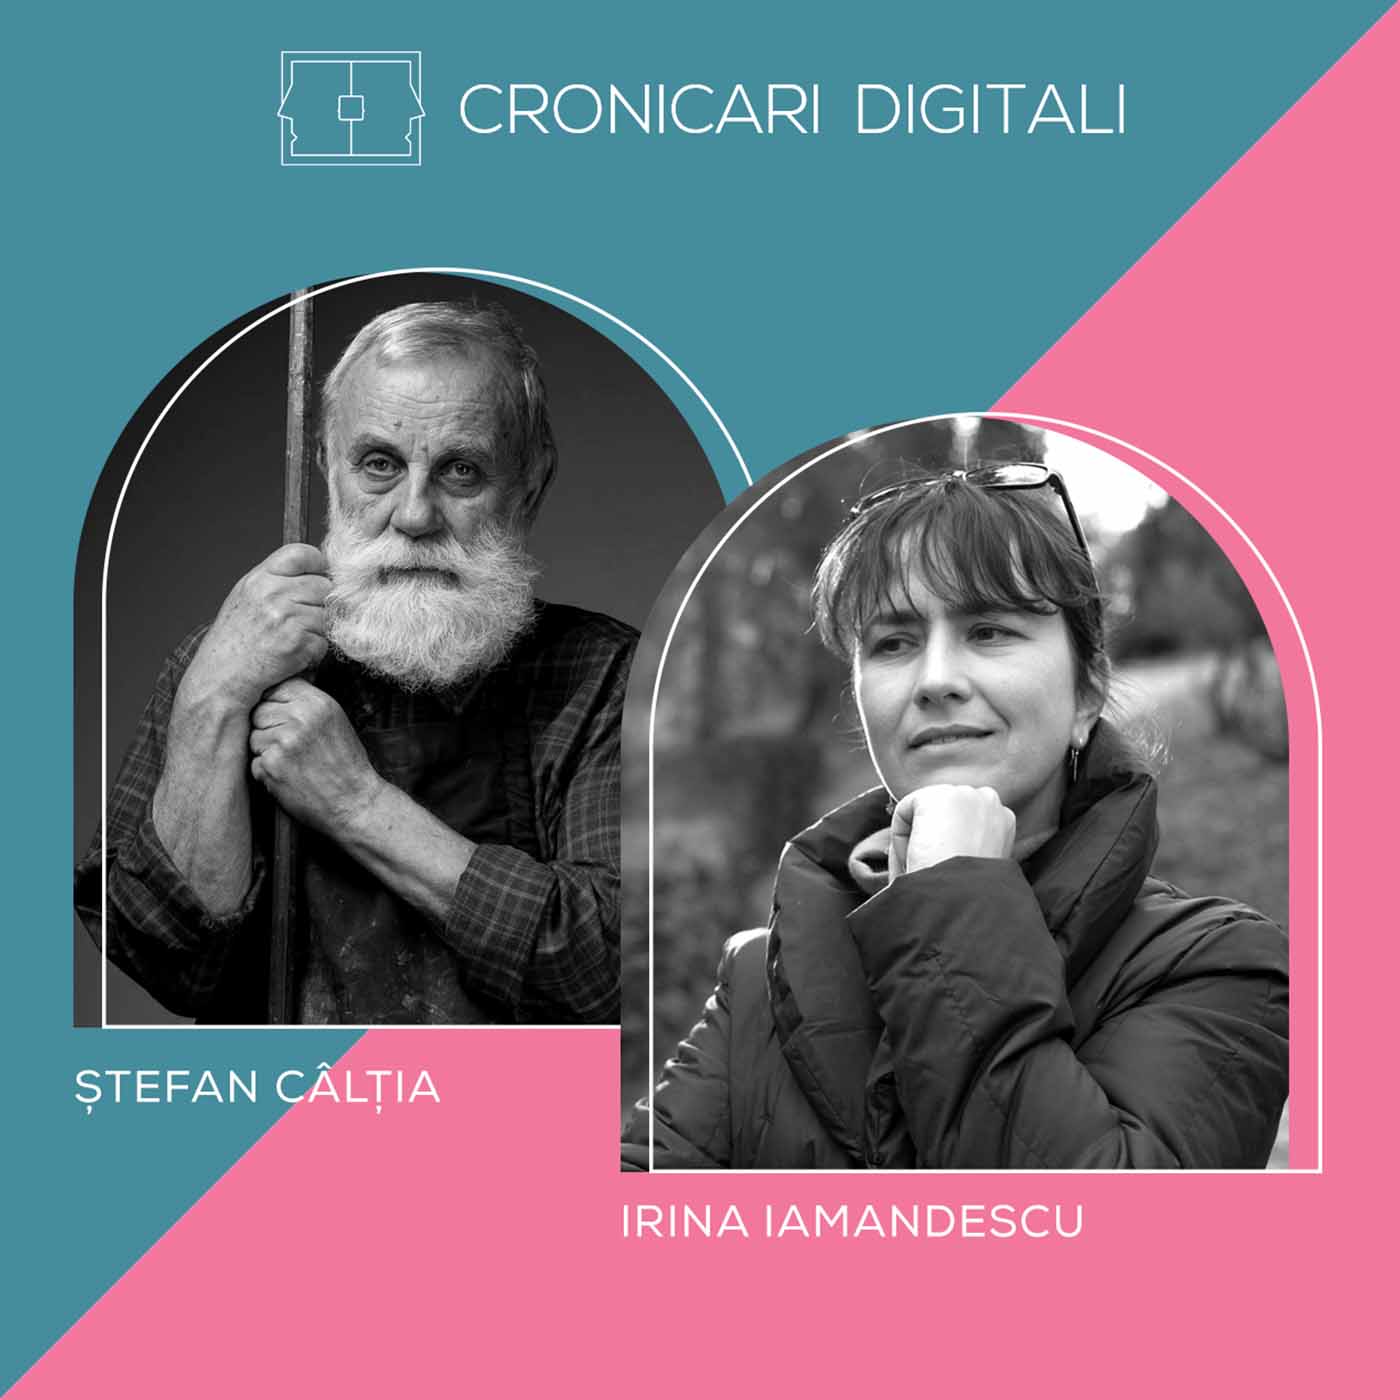 #cronicaridigitali S7 ȘTEFAN CÂLȚIA povestește despre locul în care începe magia: atelierul său. Arh. IRINA IAMANDESCU dezvăluie la ce folosește patrimoniul, odată redat comunității